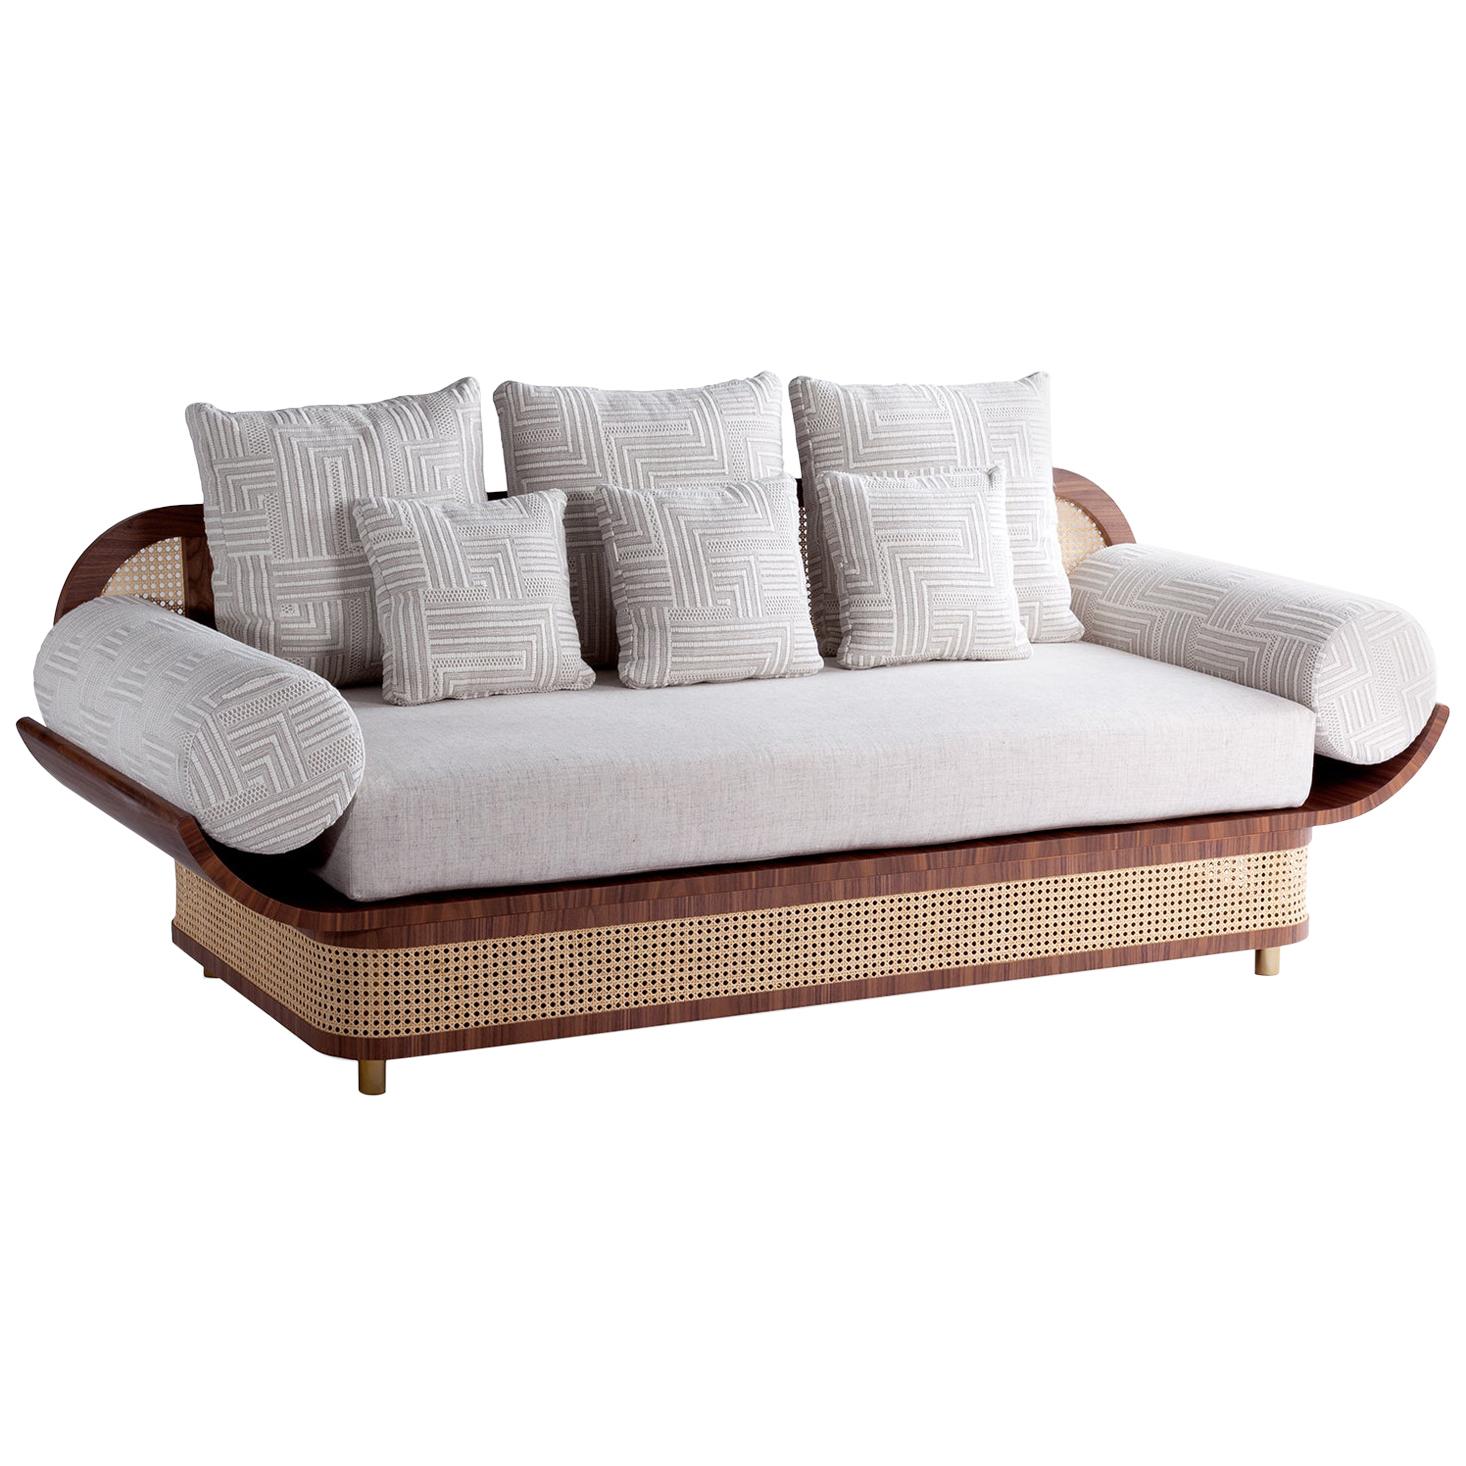 DOOQ Sofa-Sessel mit strukturiertem Stoff, natürlichem Nussbaumholz und Messingdetails, Majestät